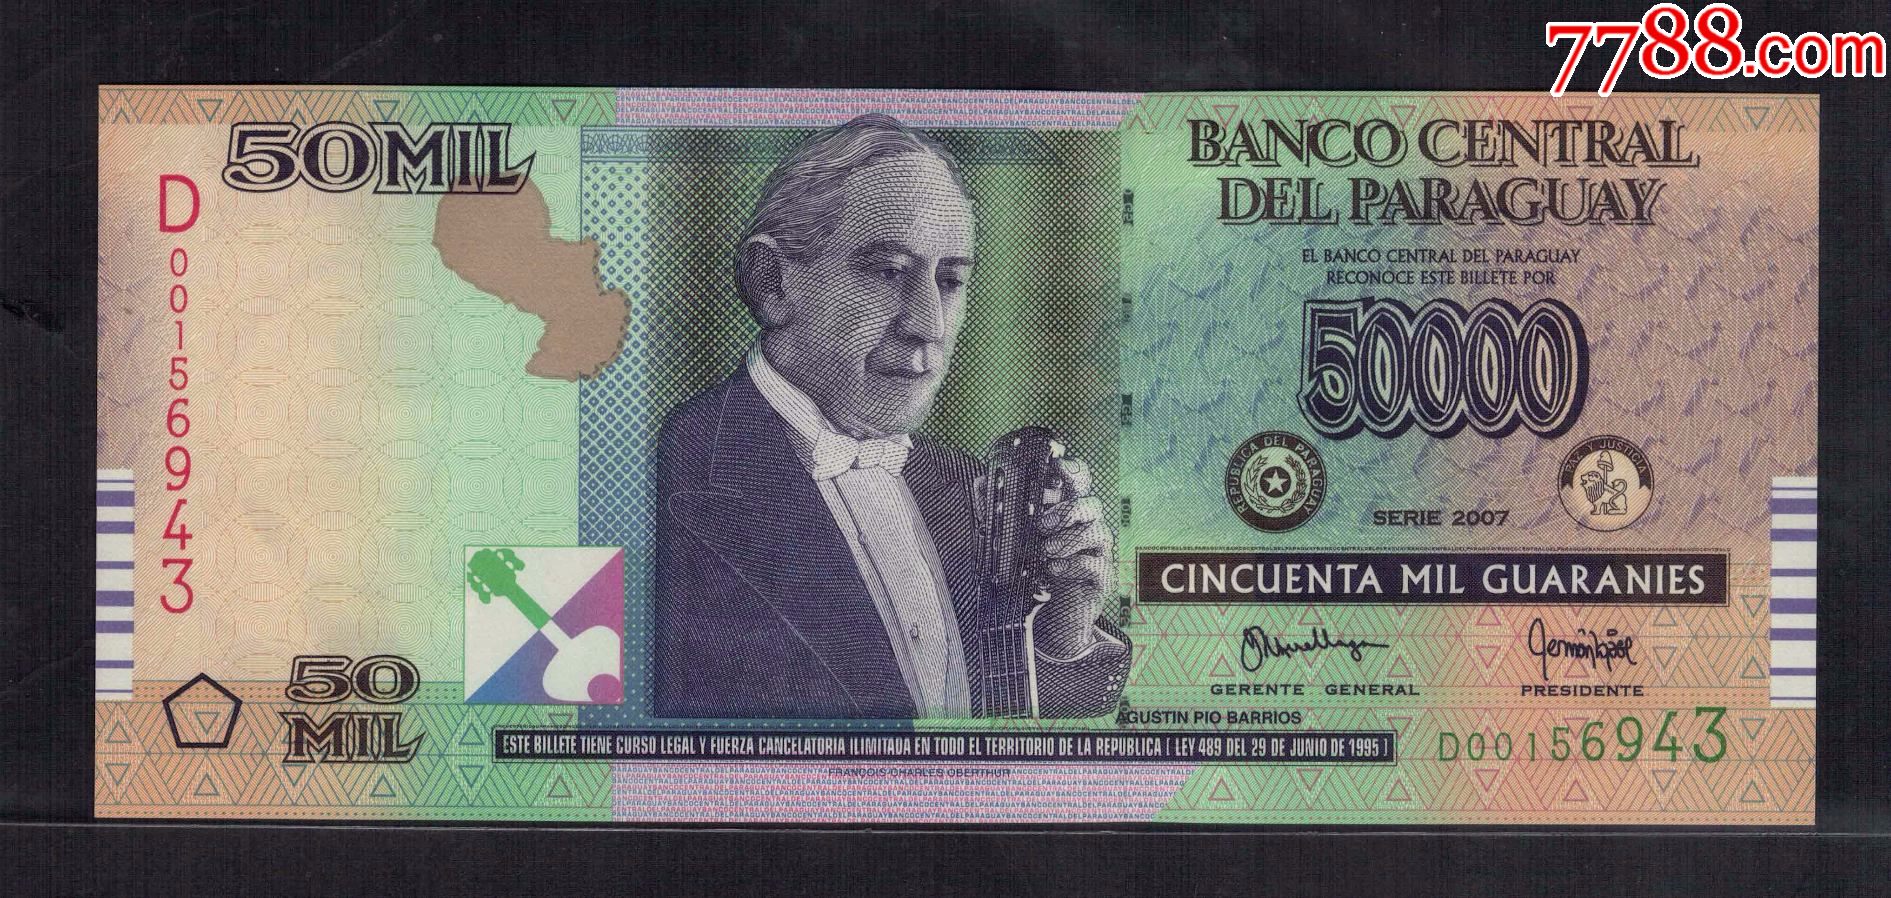 全新美洲巴拉圭50000瓜拉尼纸币2007年版p